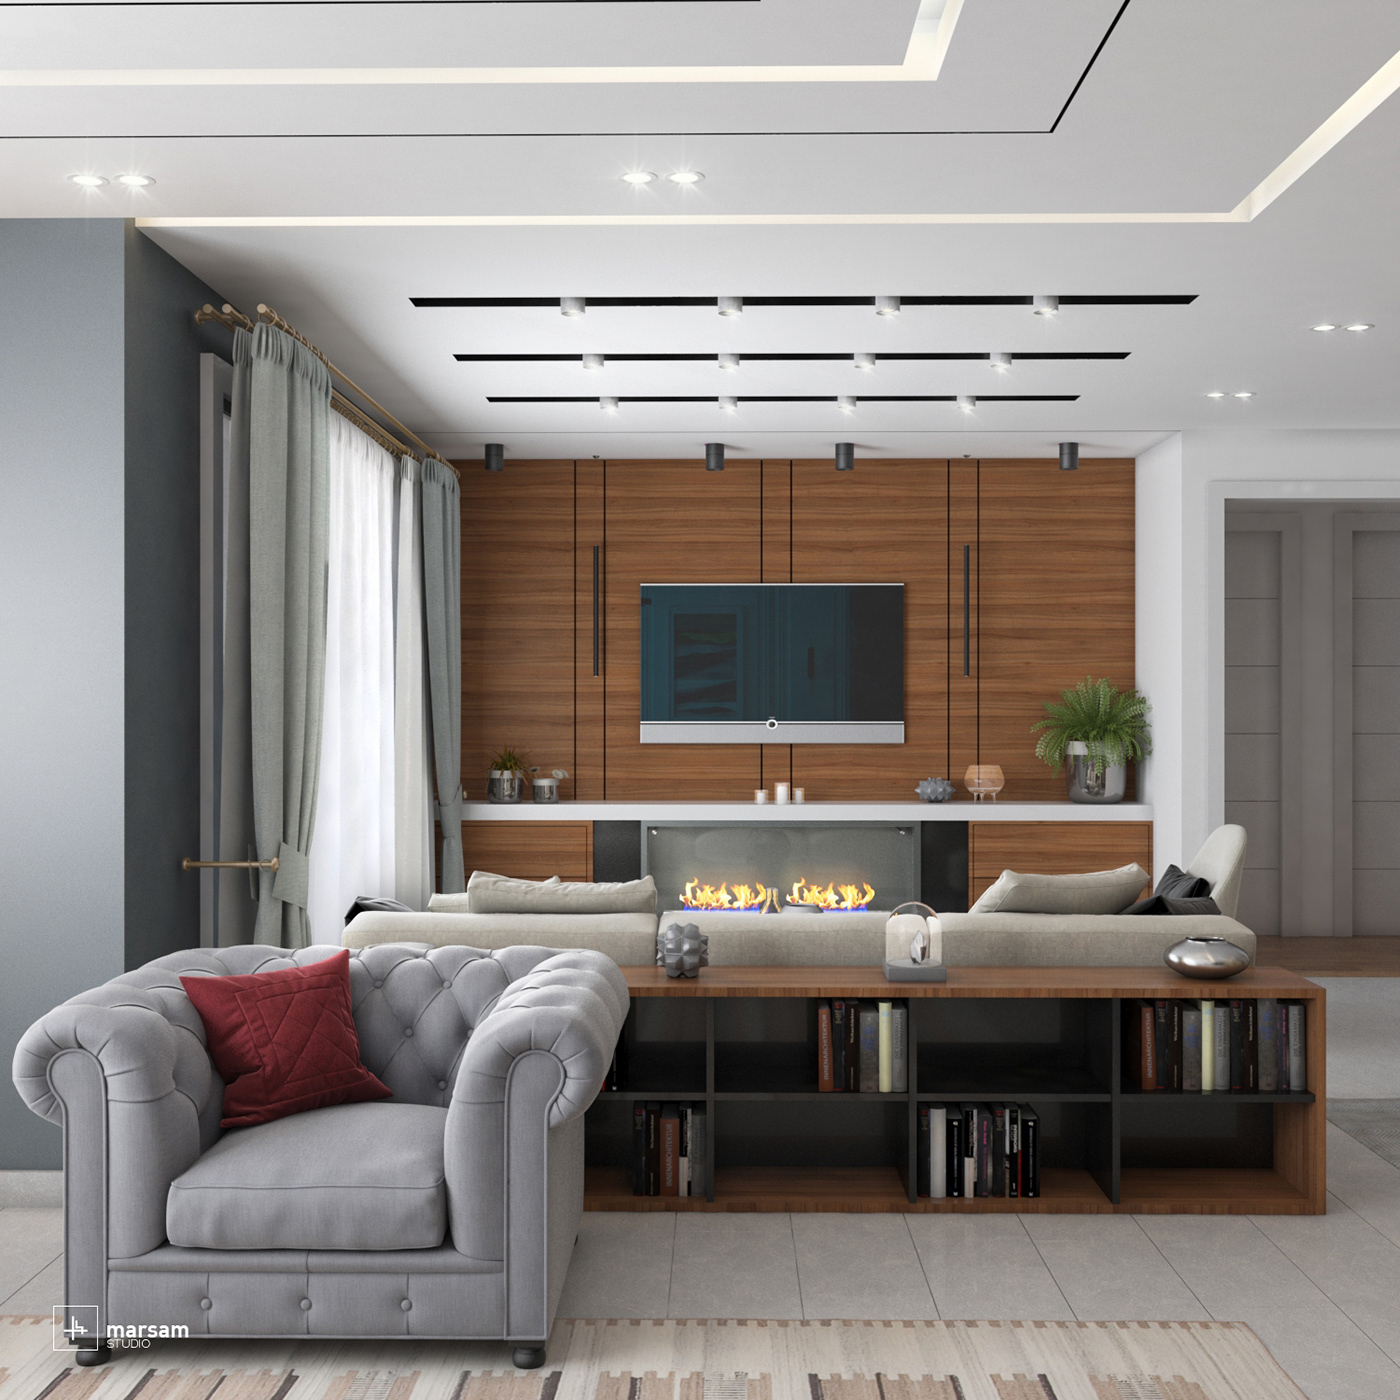 #interiordesign furniture architecture decore decoration